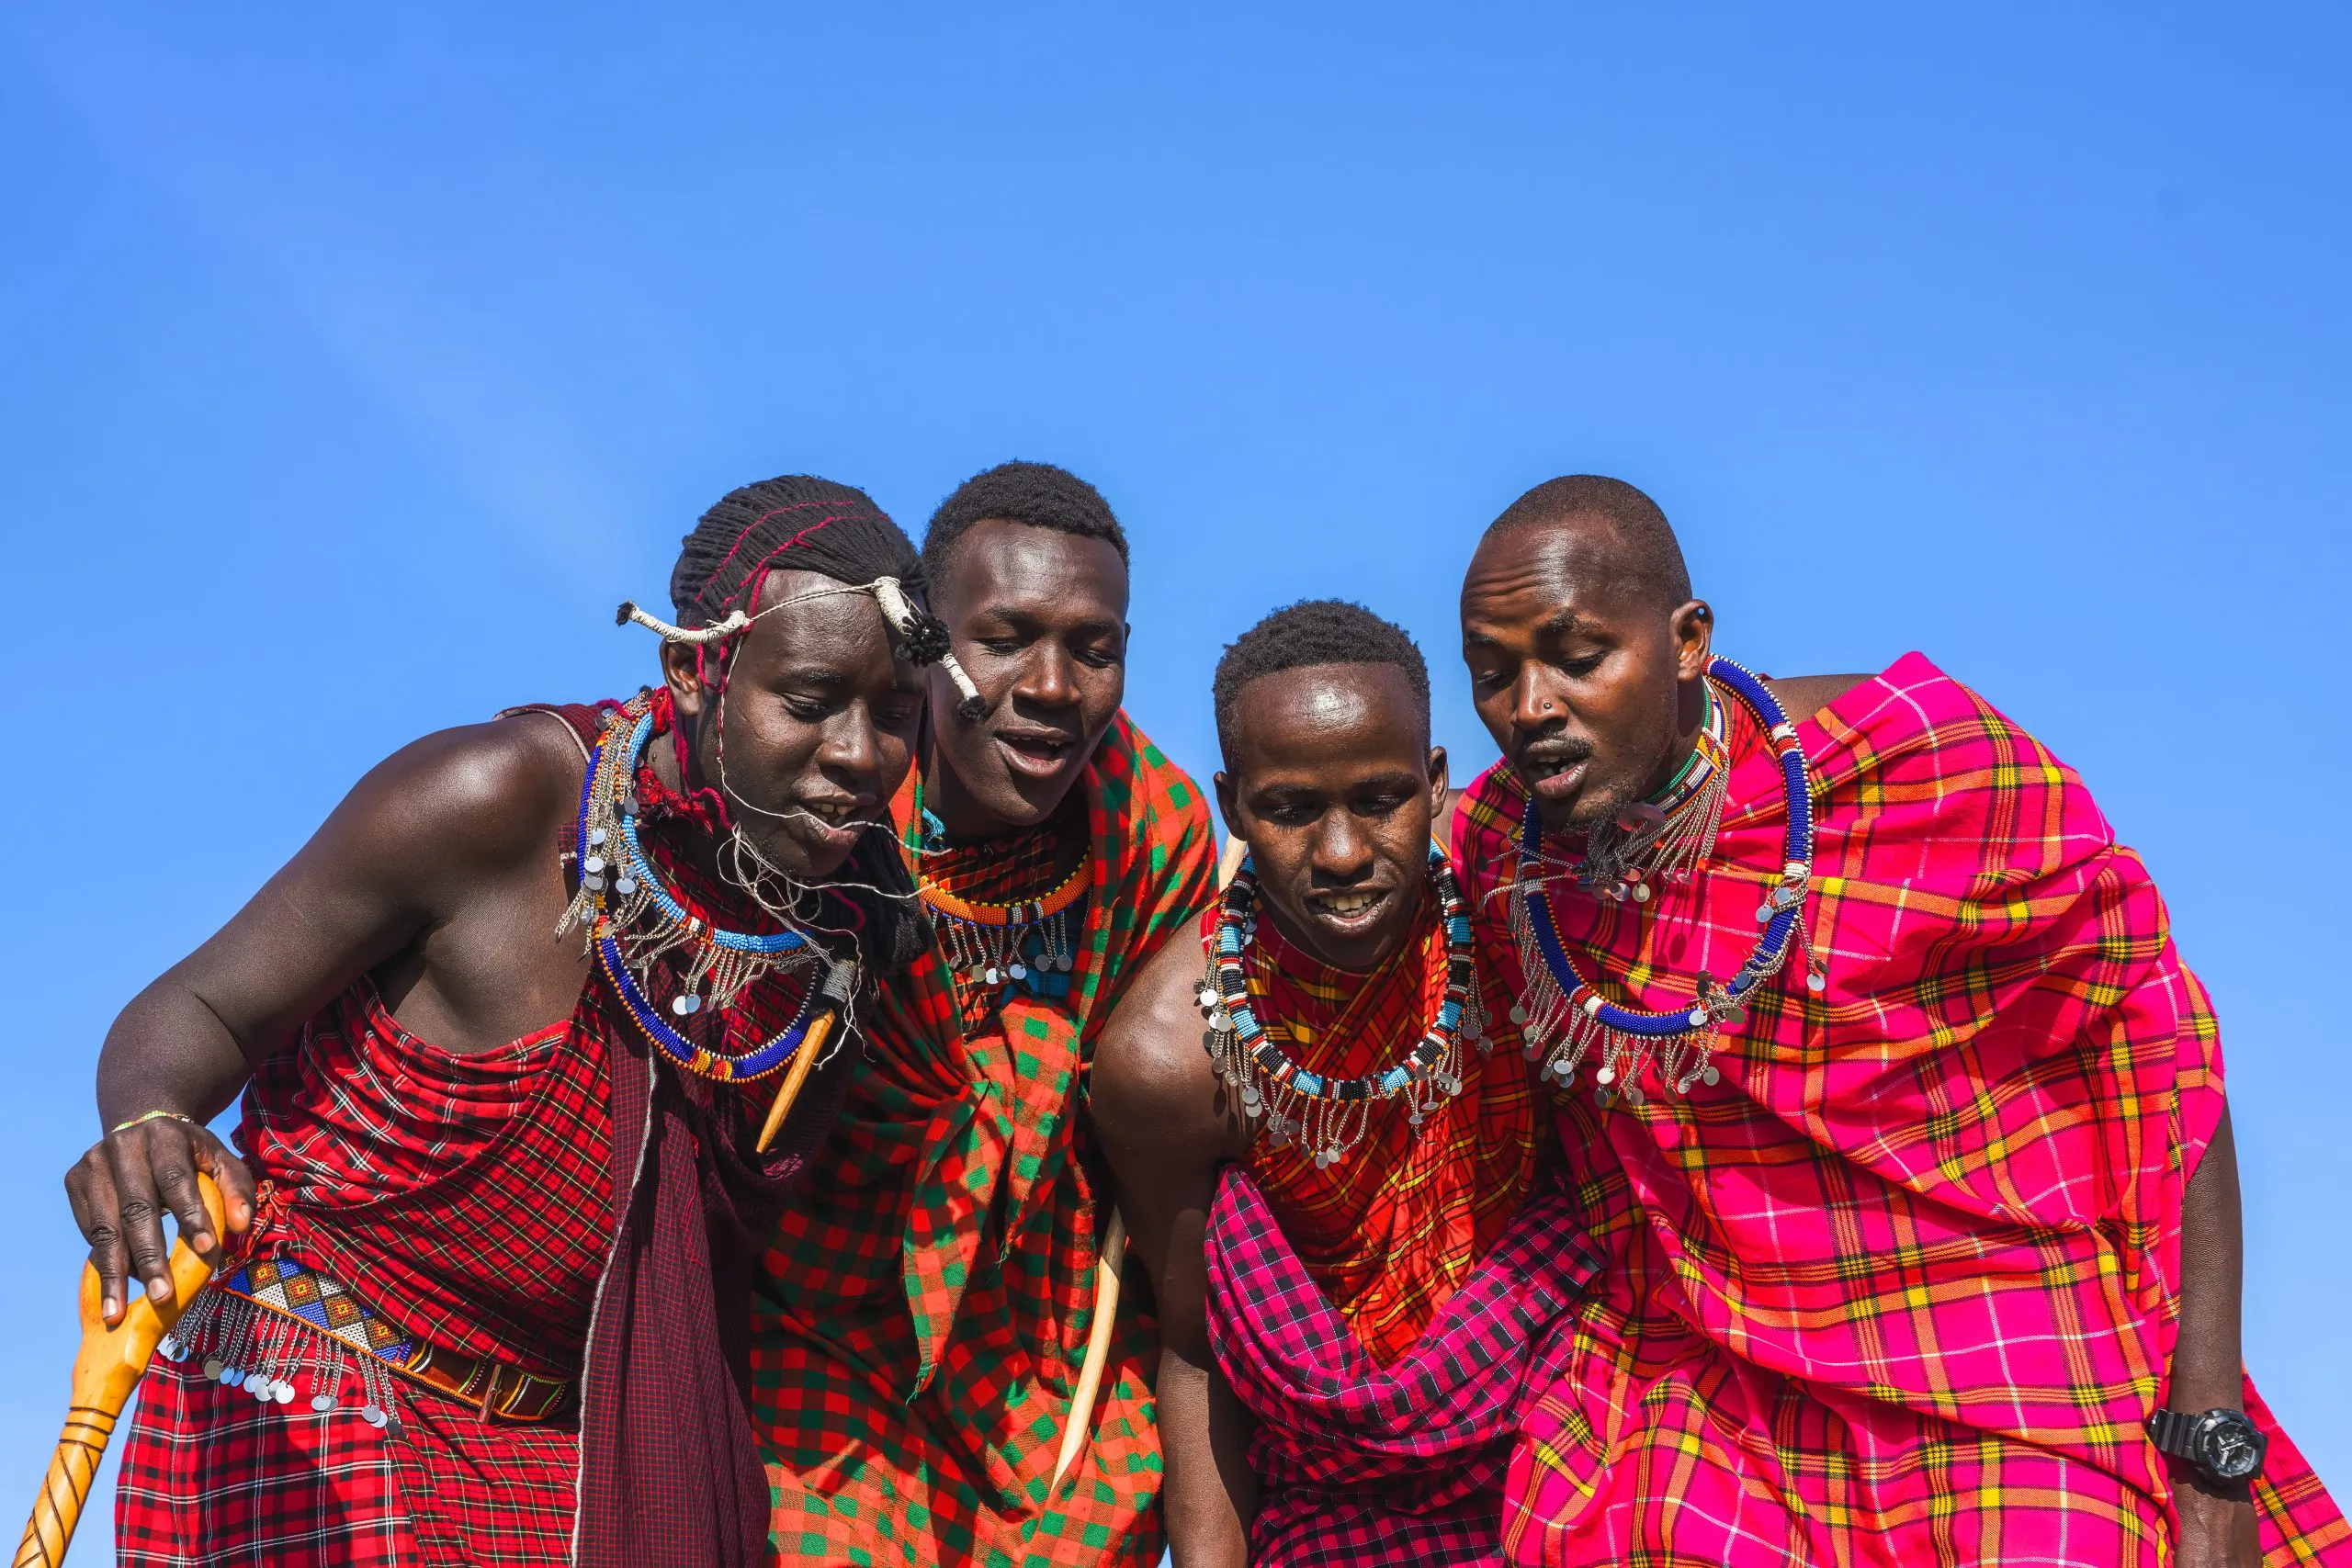 Maasai Mara Mann zeigt traditionellen Maasai-Sprungtanz